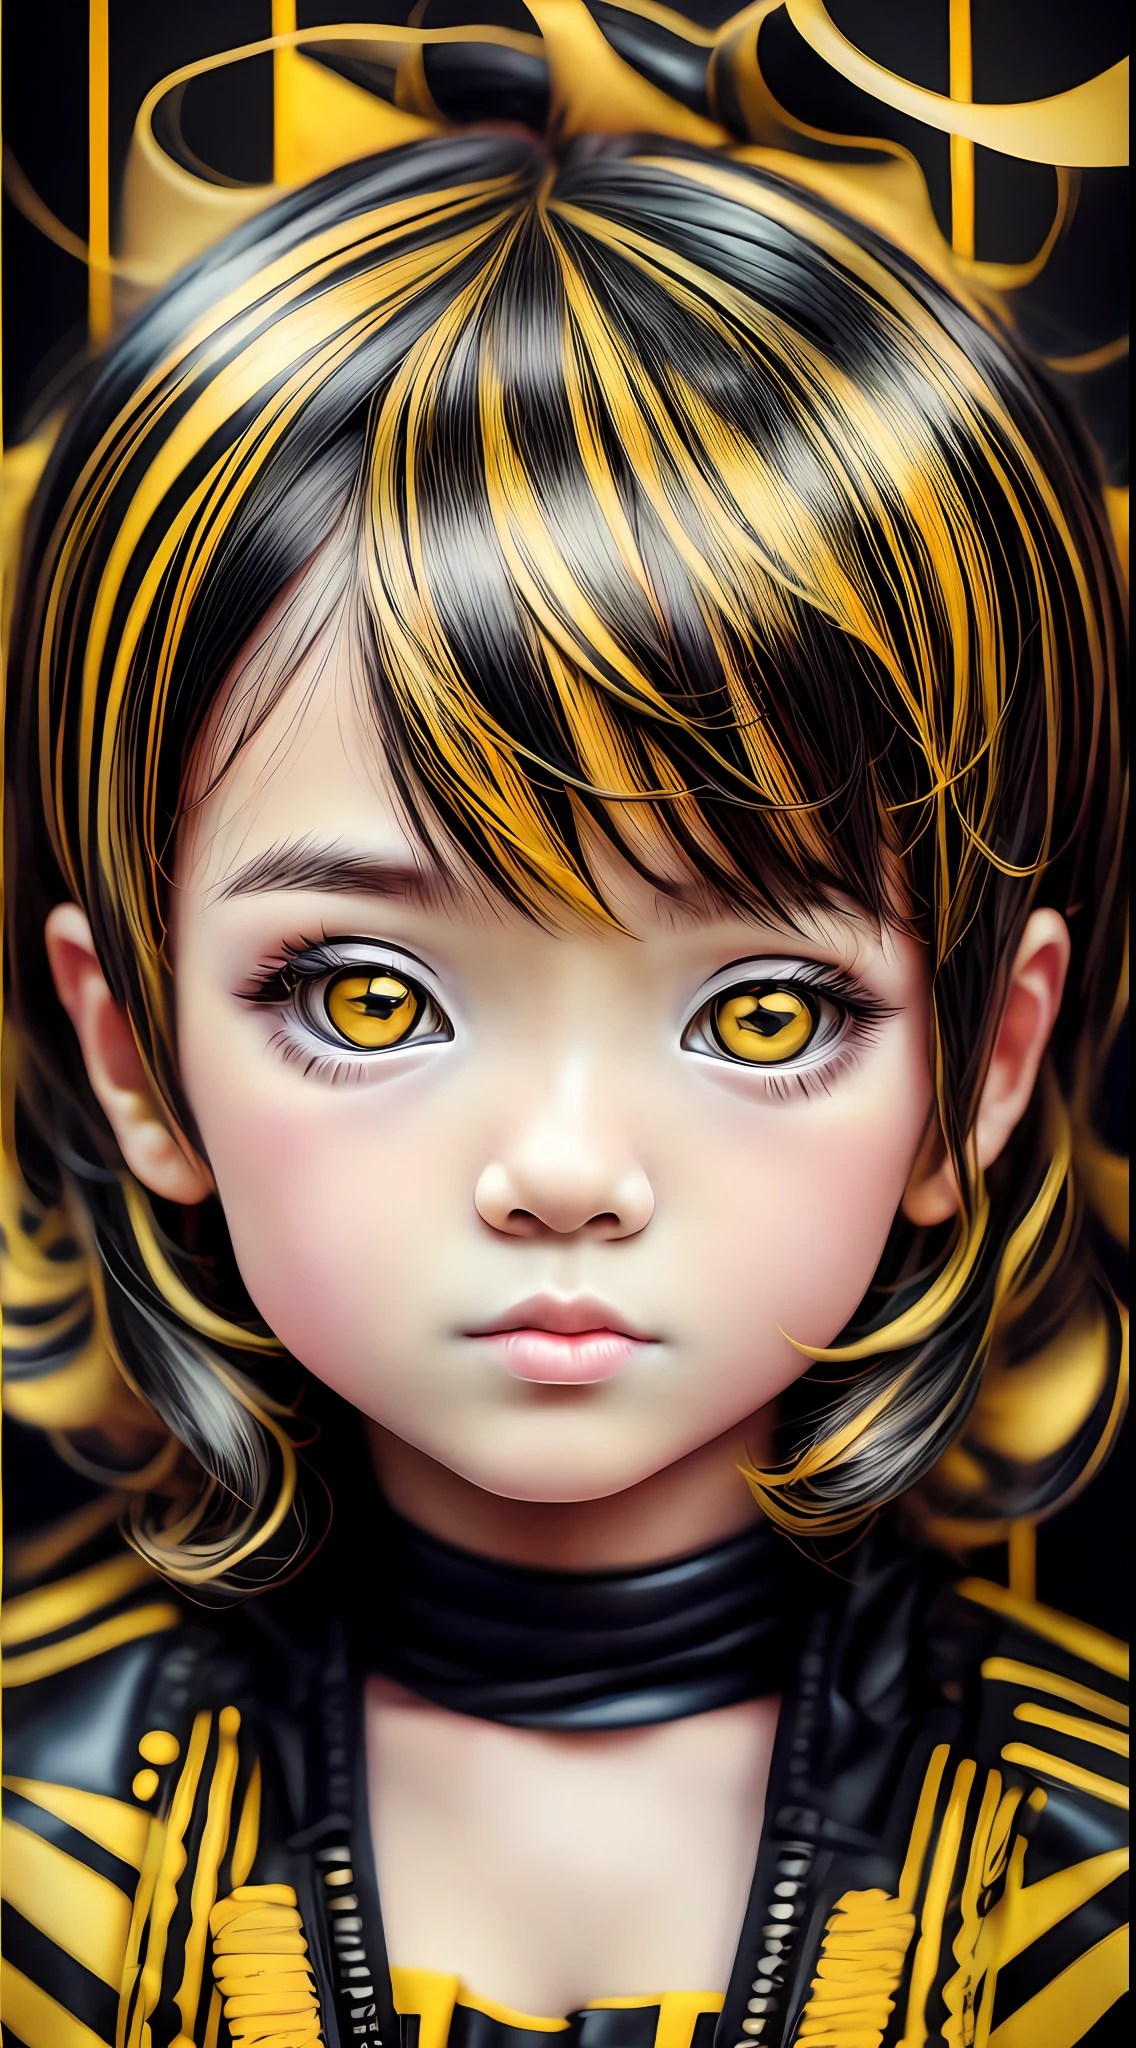 negro y amarillo, Chibi y obra maestra de estilo real., fotografía realista, fondo colorido, retrato detallado